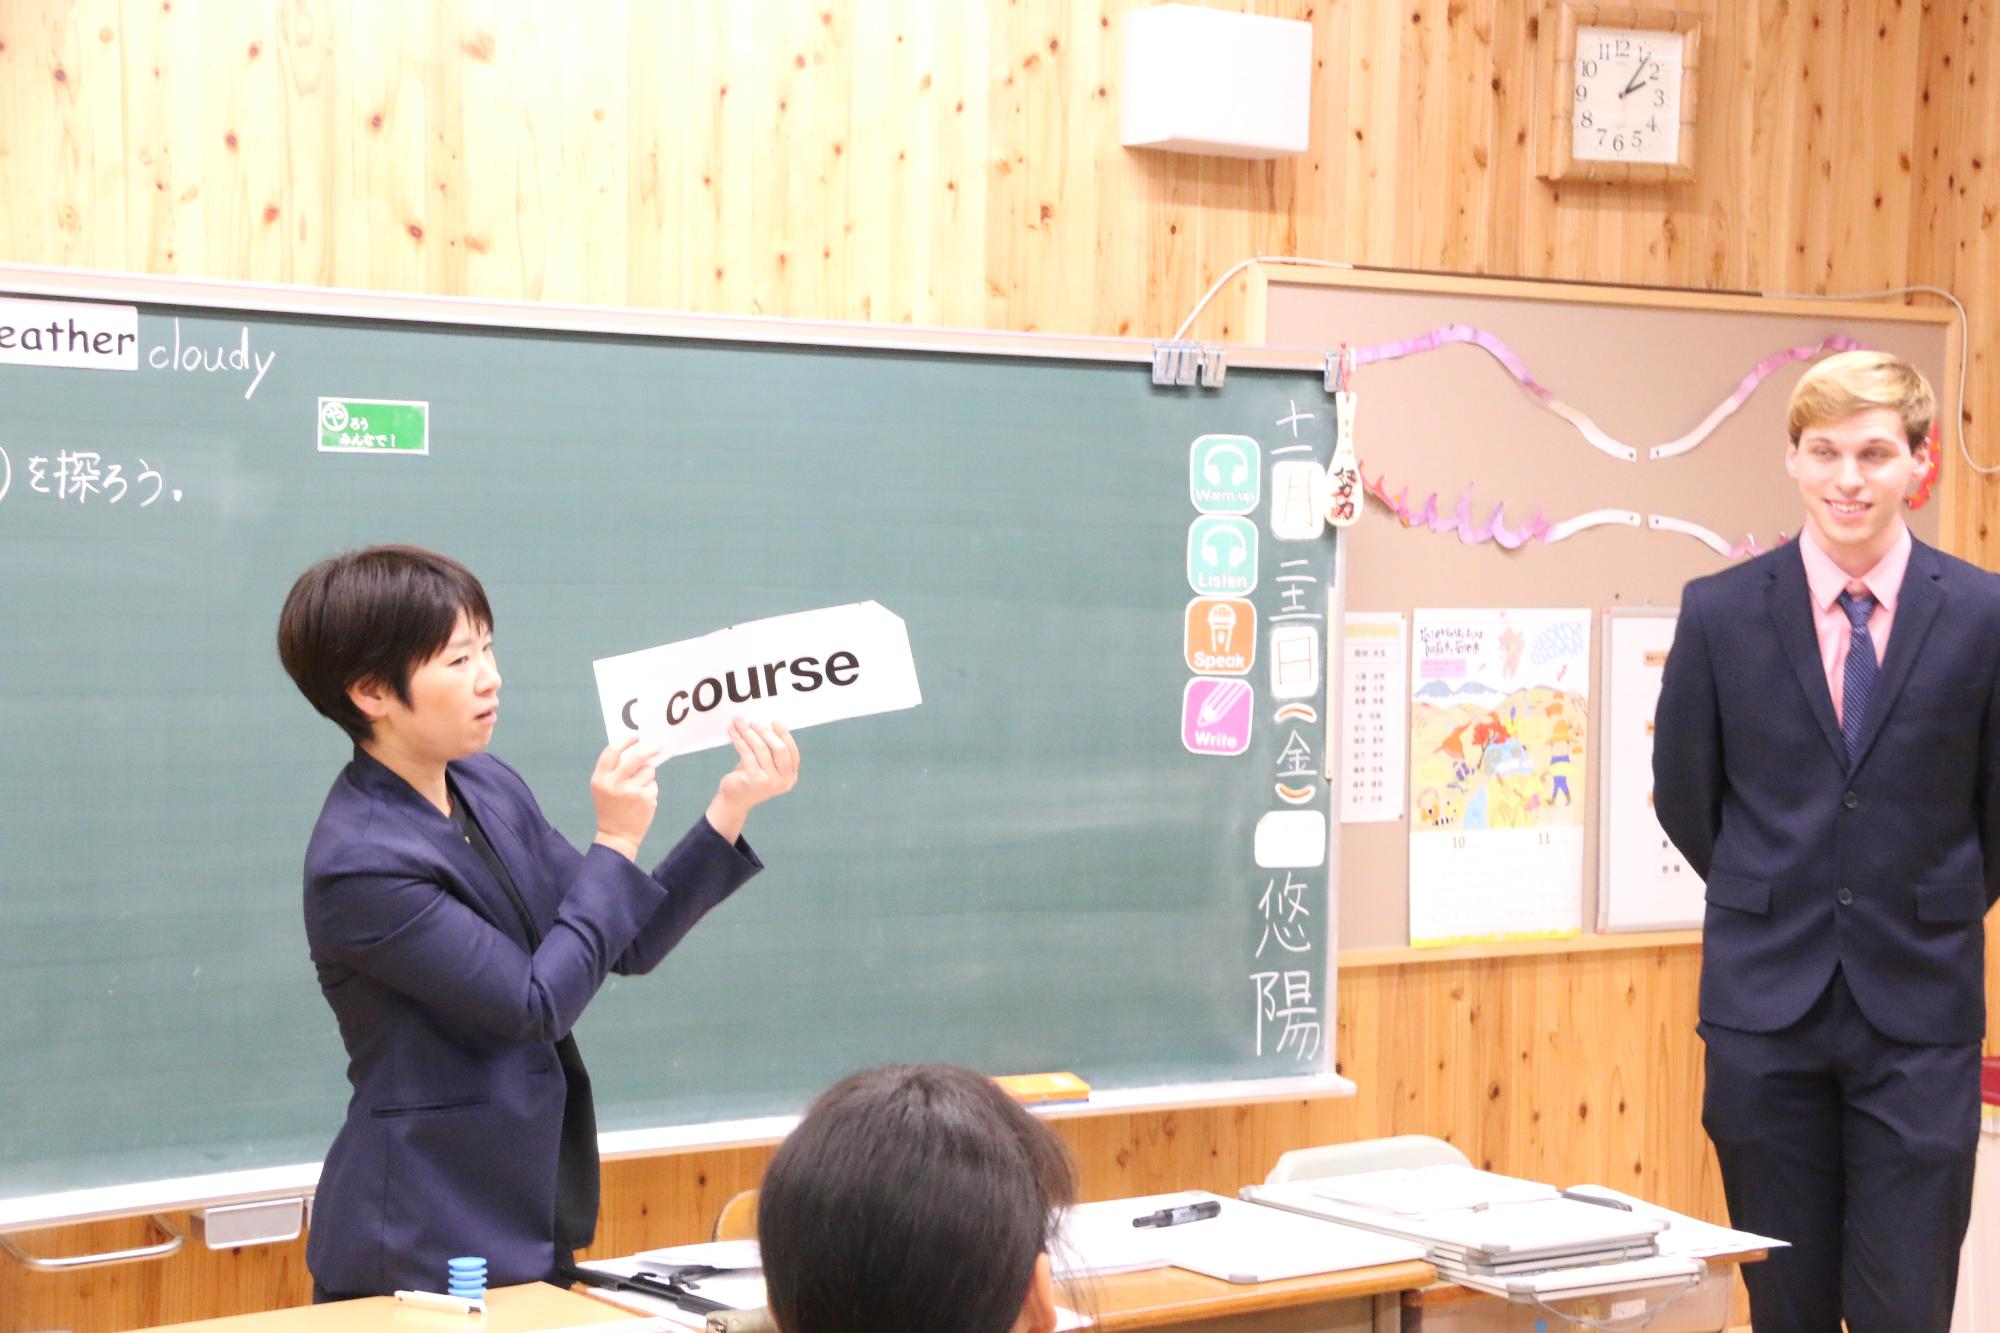 ヒゴタイイングリッシュクラスで教える日本人教師とアメリカ人講師